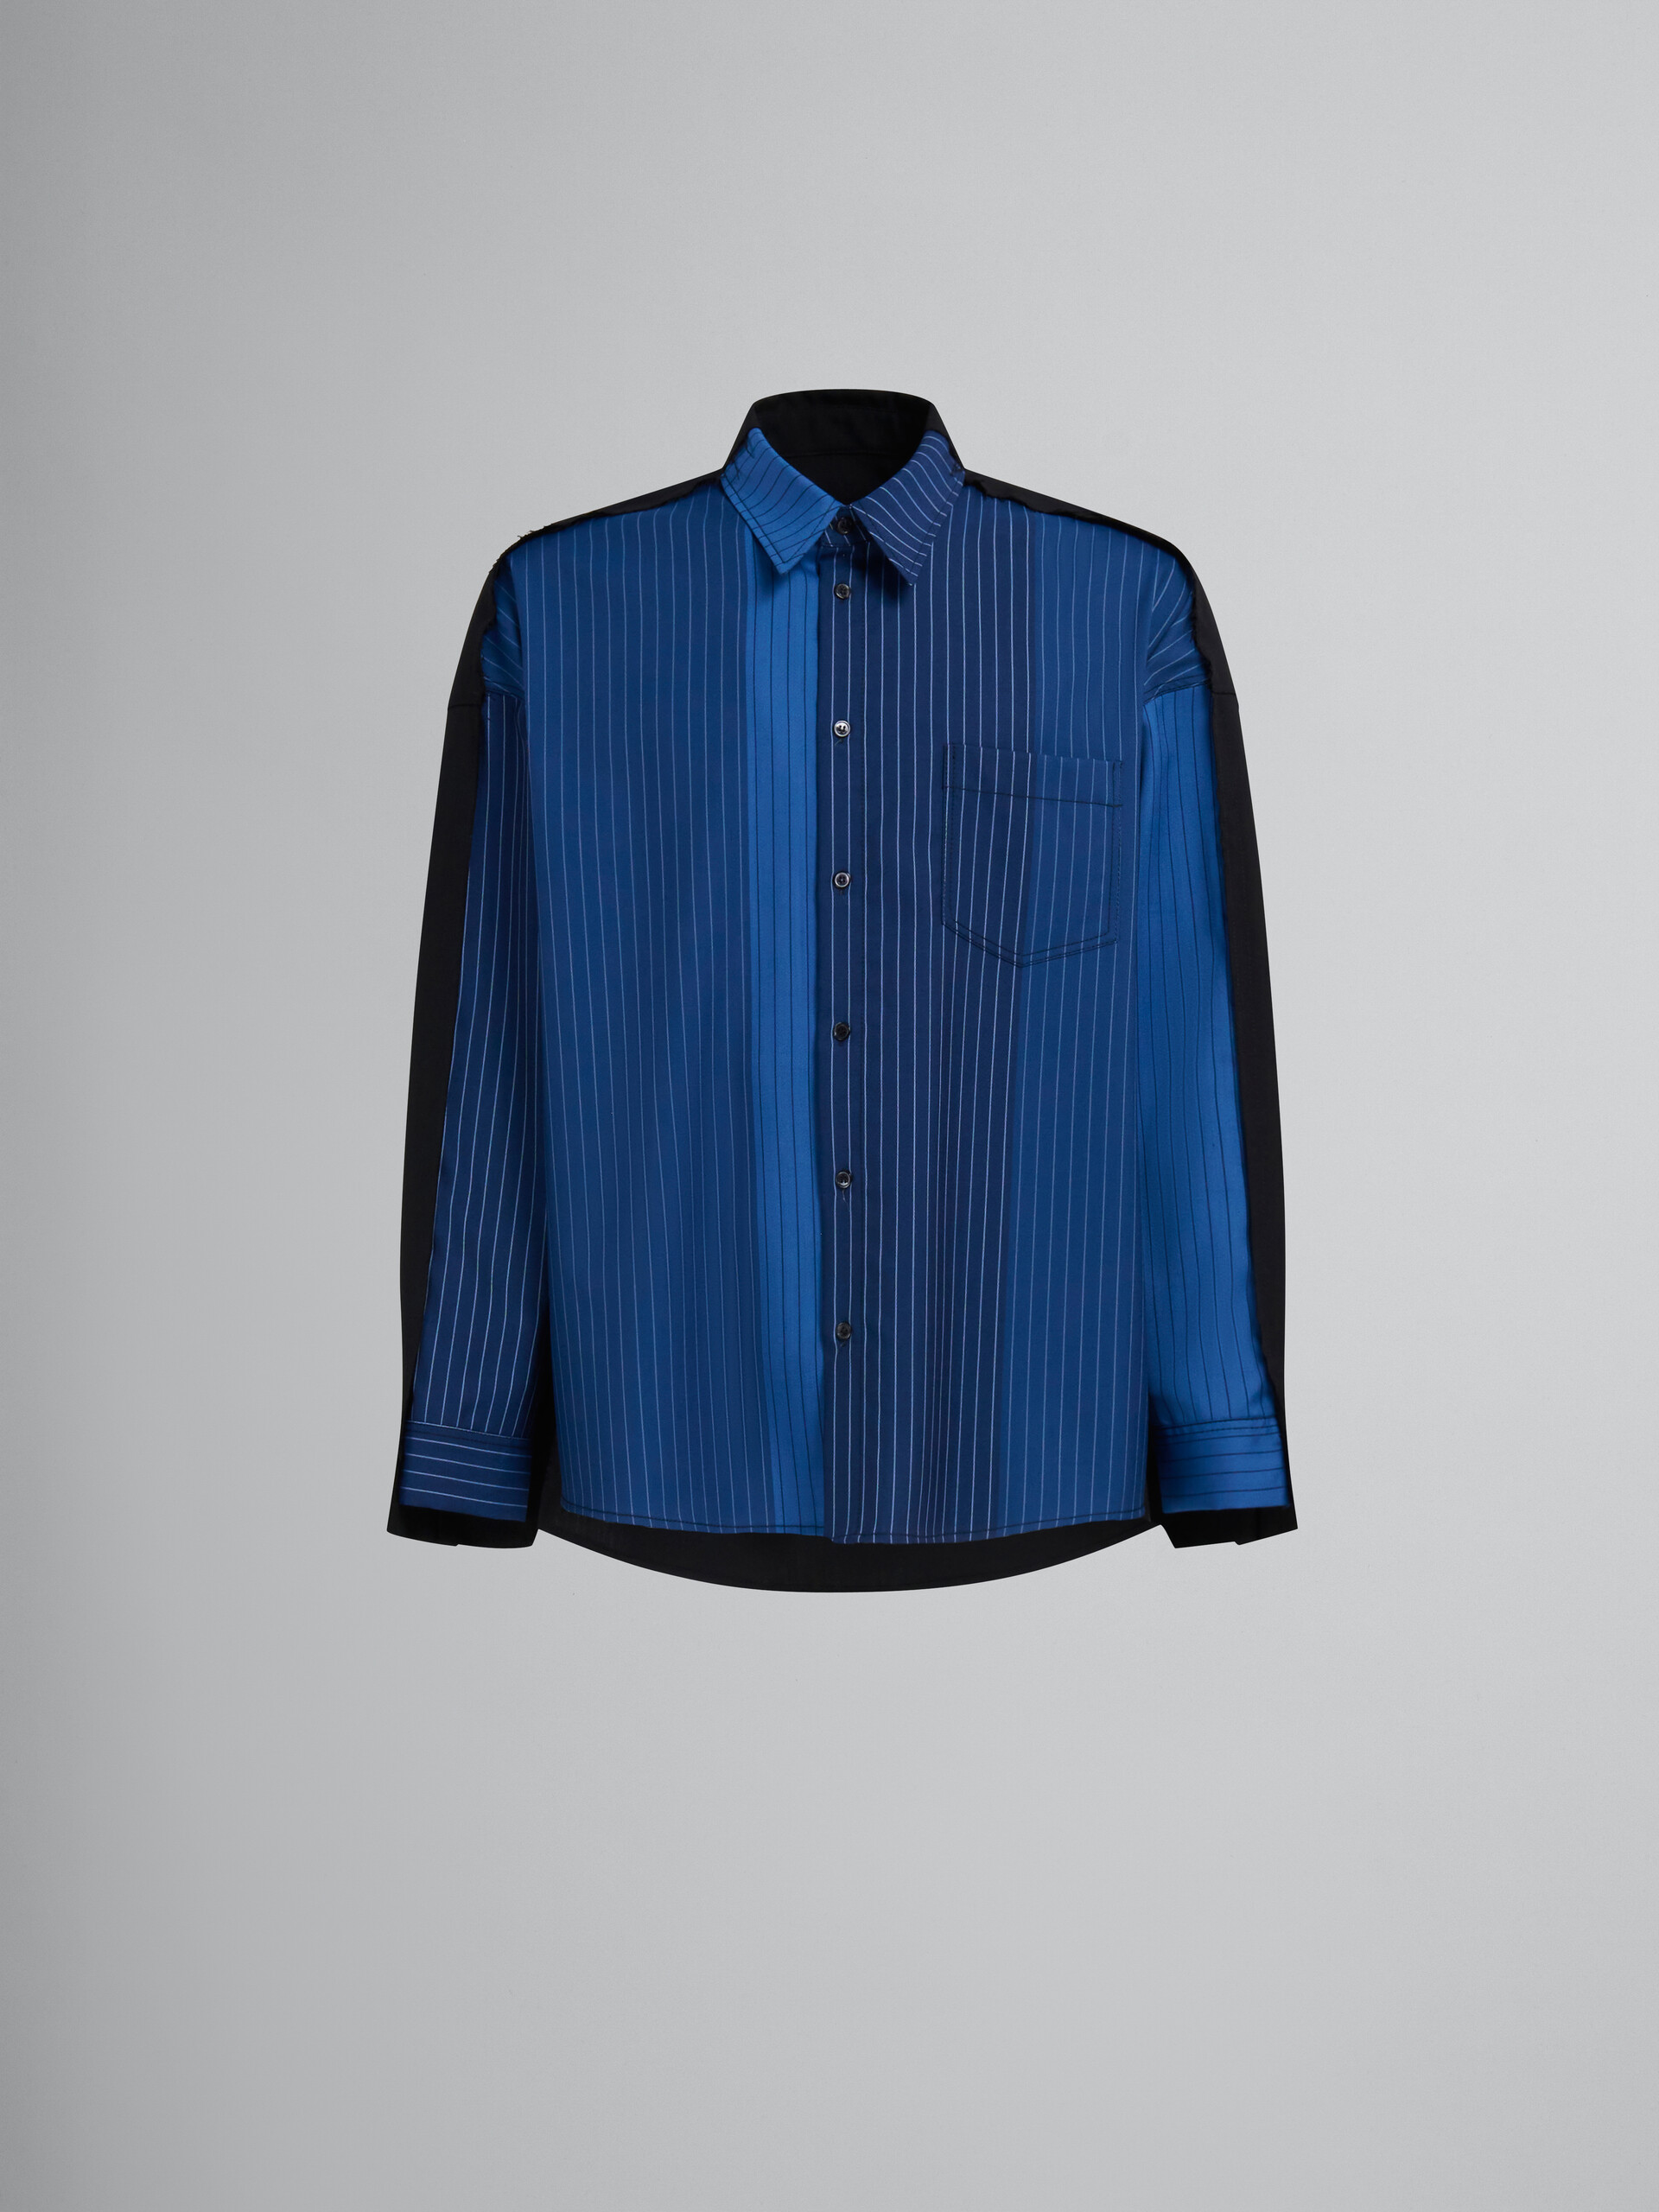 ブルー グラデーションピンストライプ ウール製シャツ、コントラストバック - シャツ - Image 1